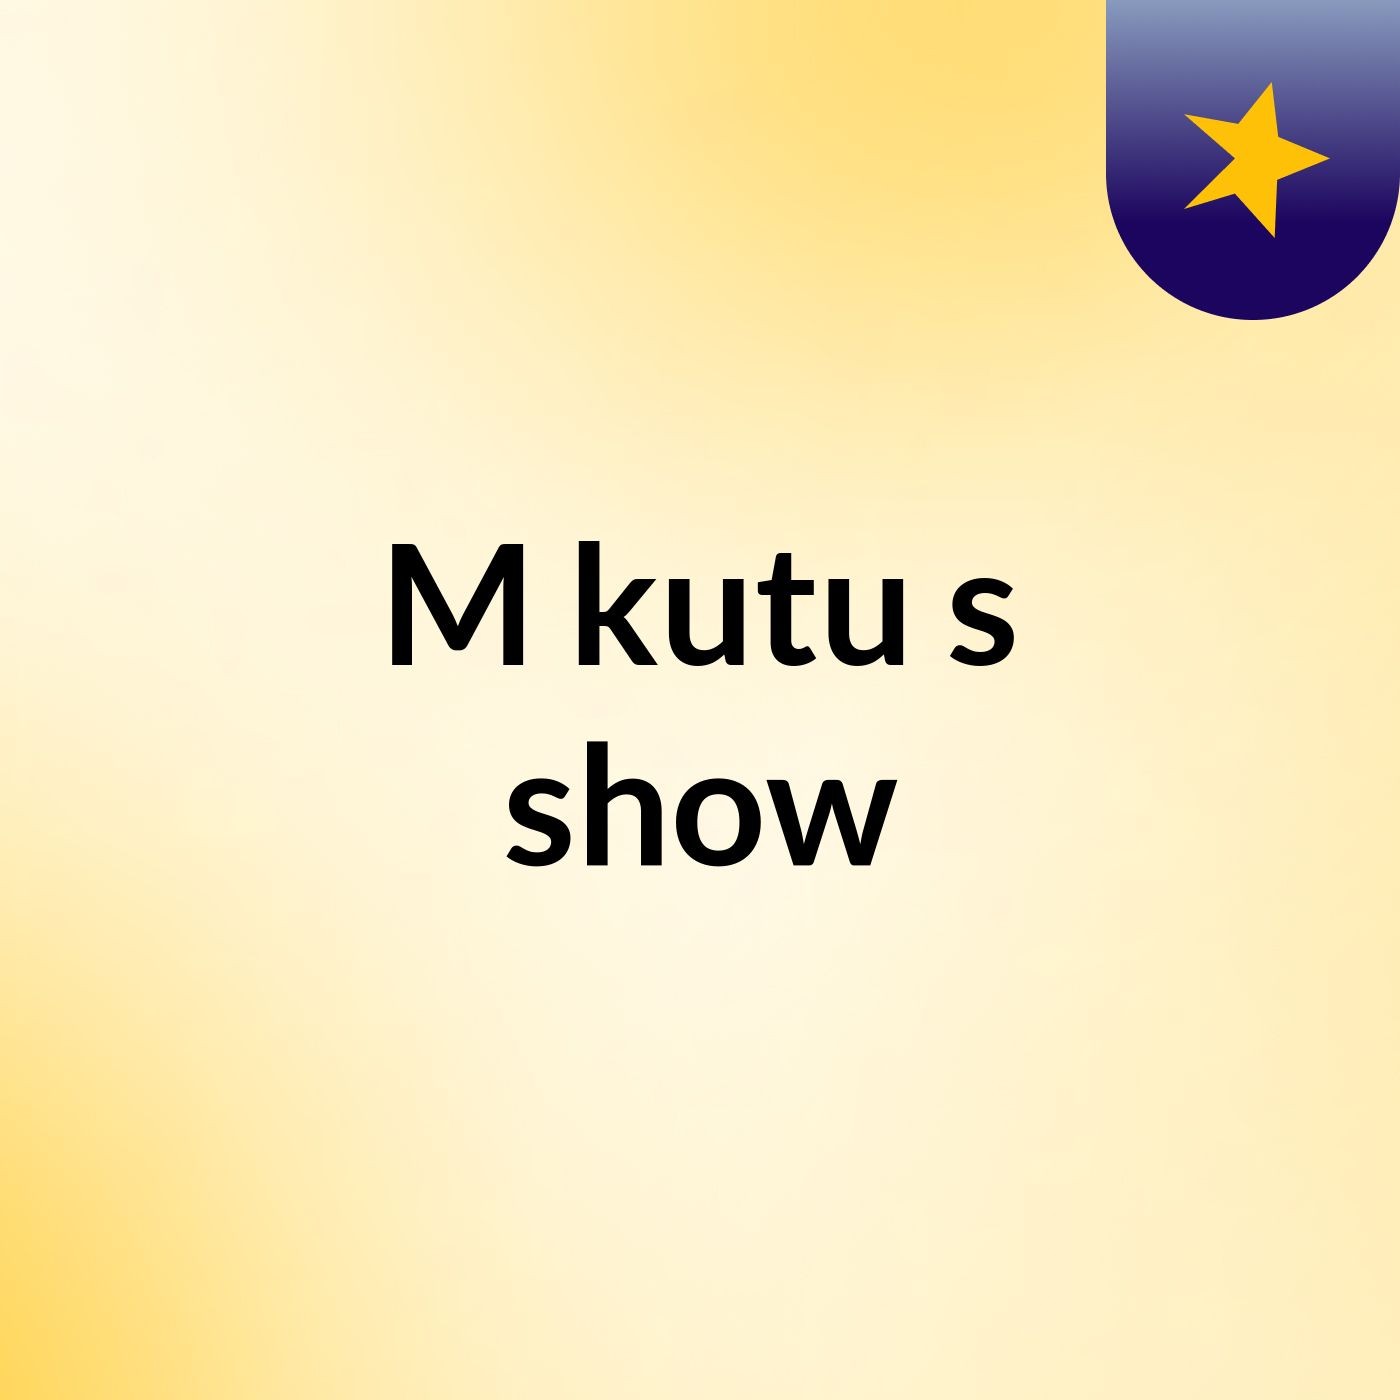 M kutu's show